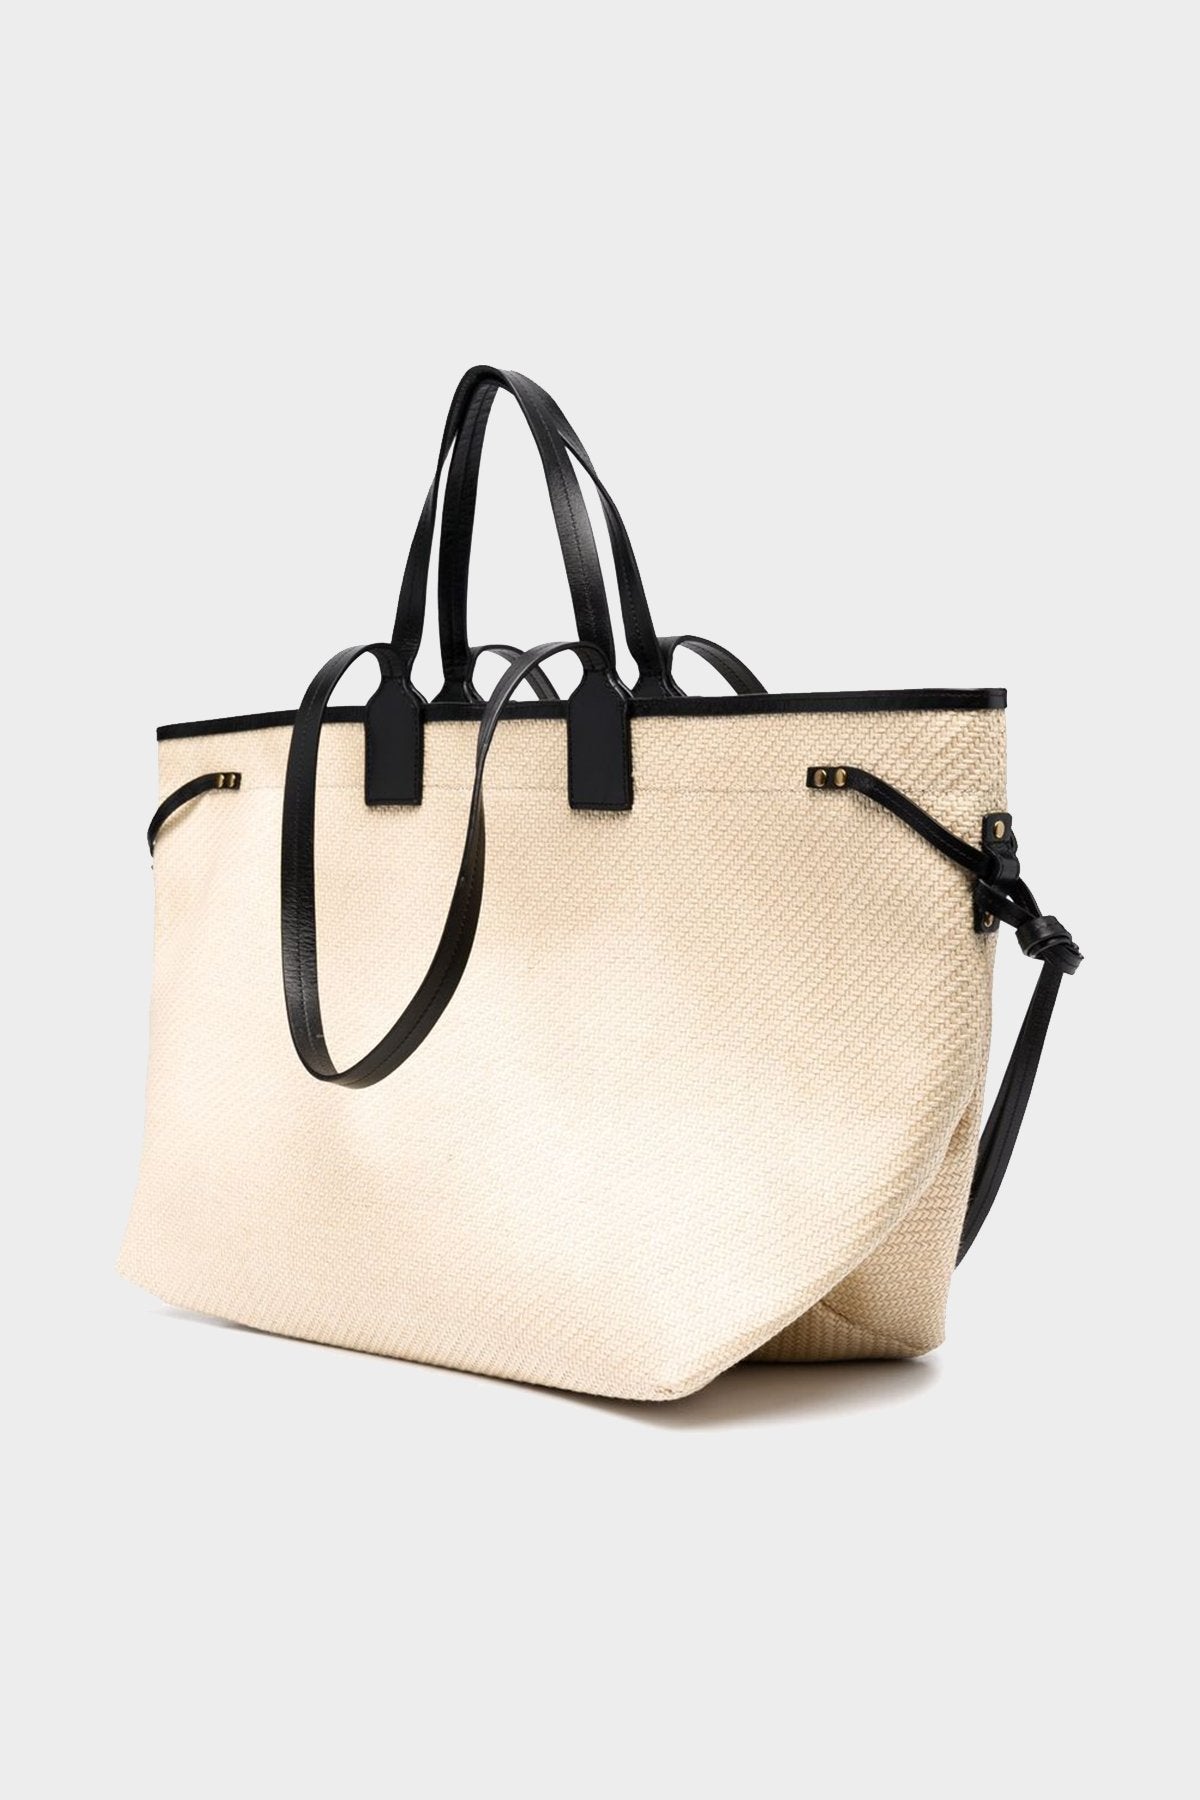 Wydra Shoulder Bag in Natural Black - shop-olivia.com